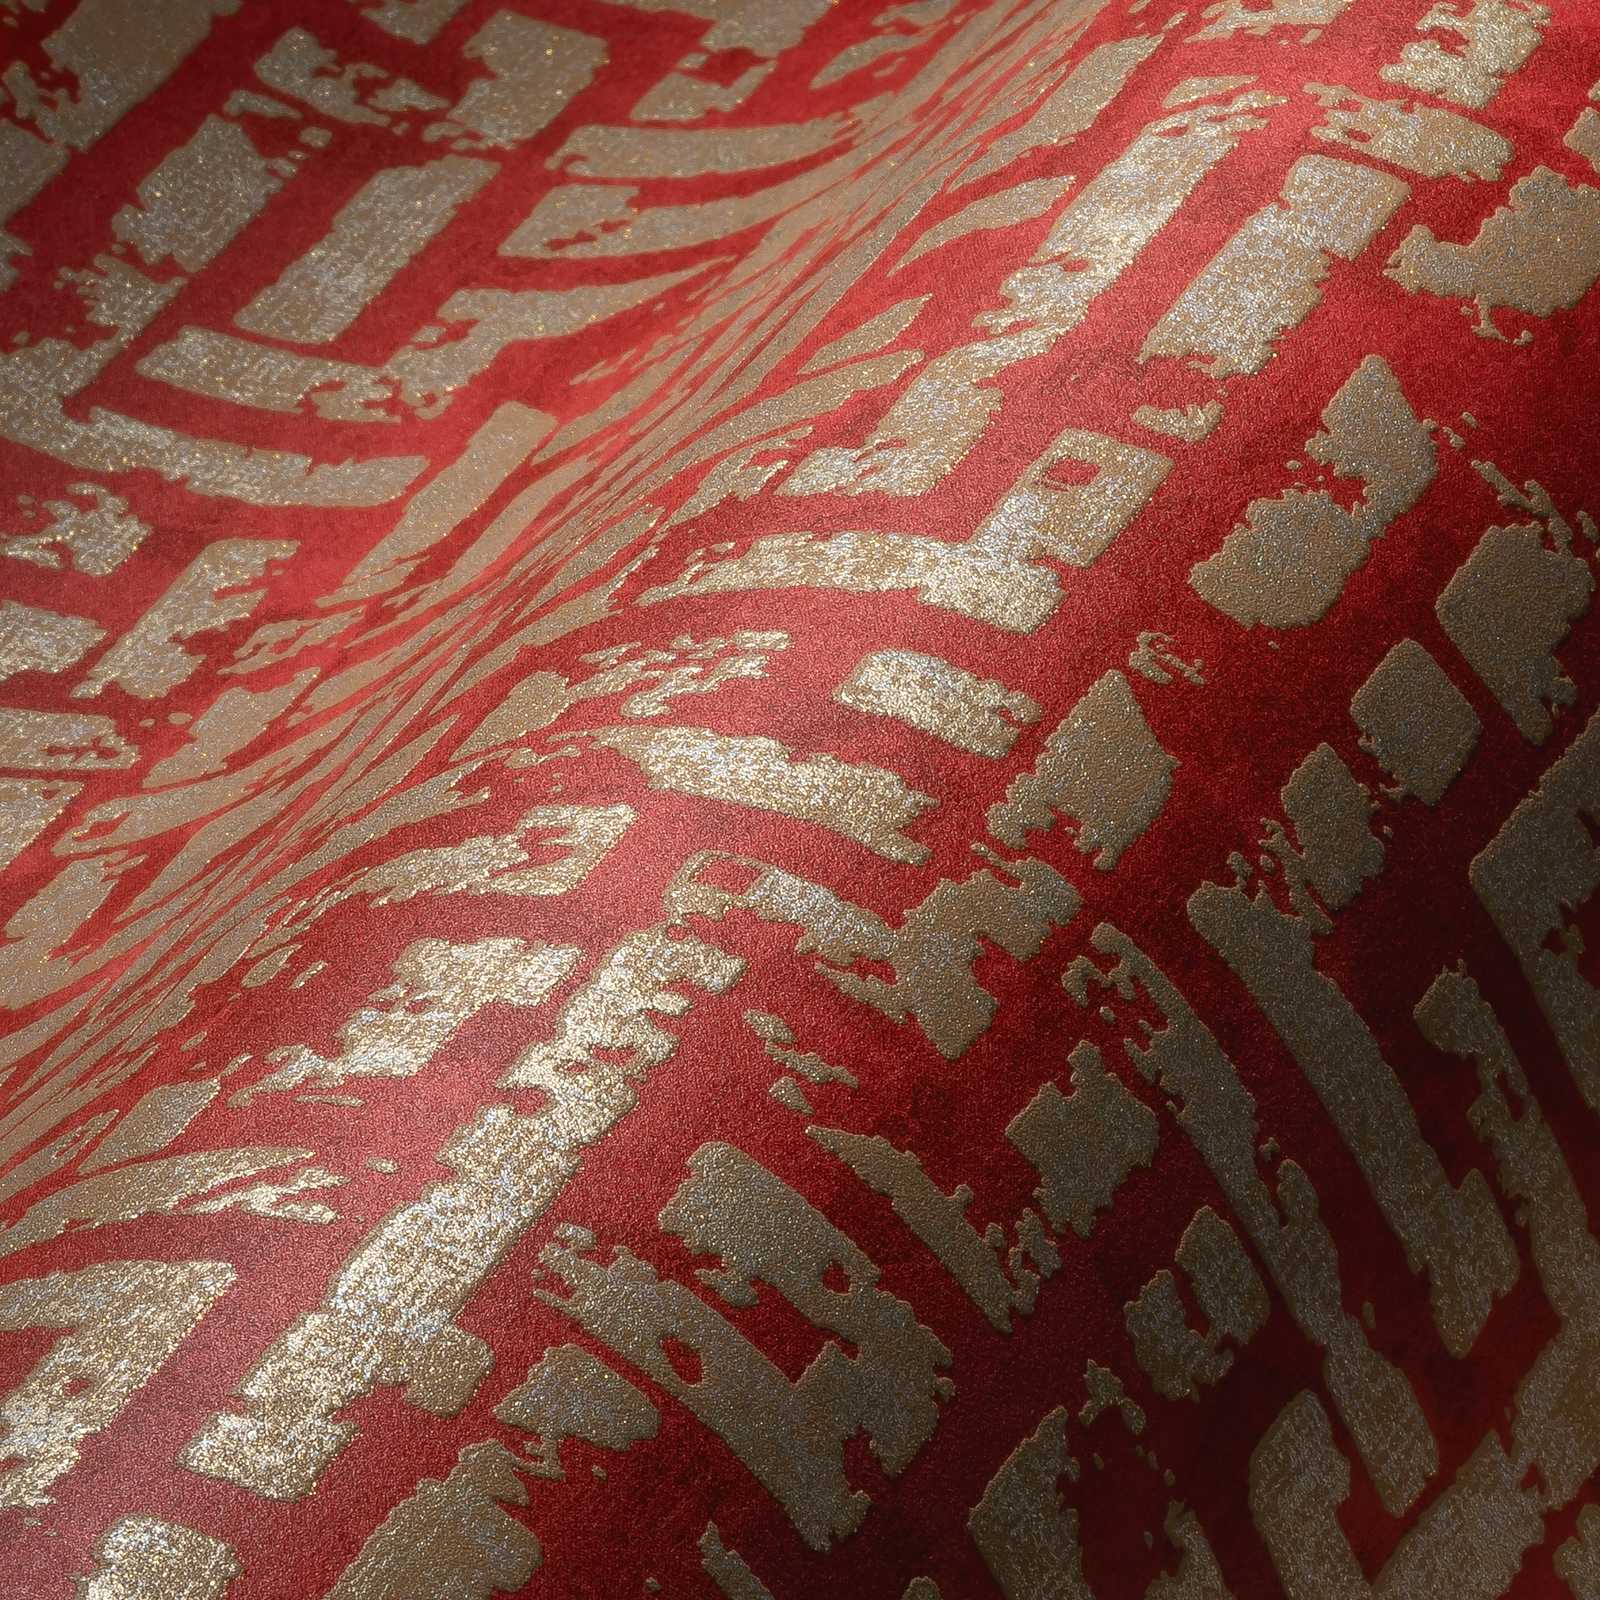             Carta da parati rosso-oro con motivo grafico e aspetto usato - rosso, metallizzato
        